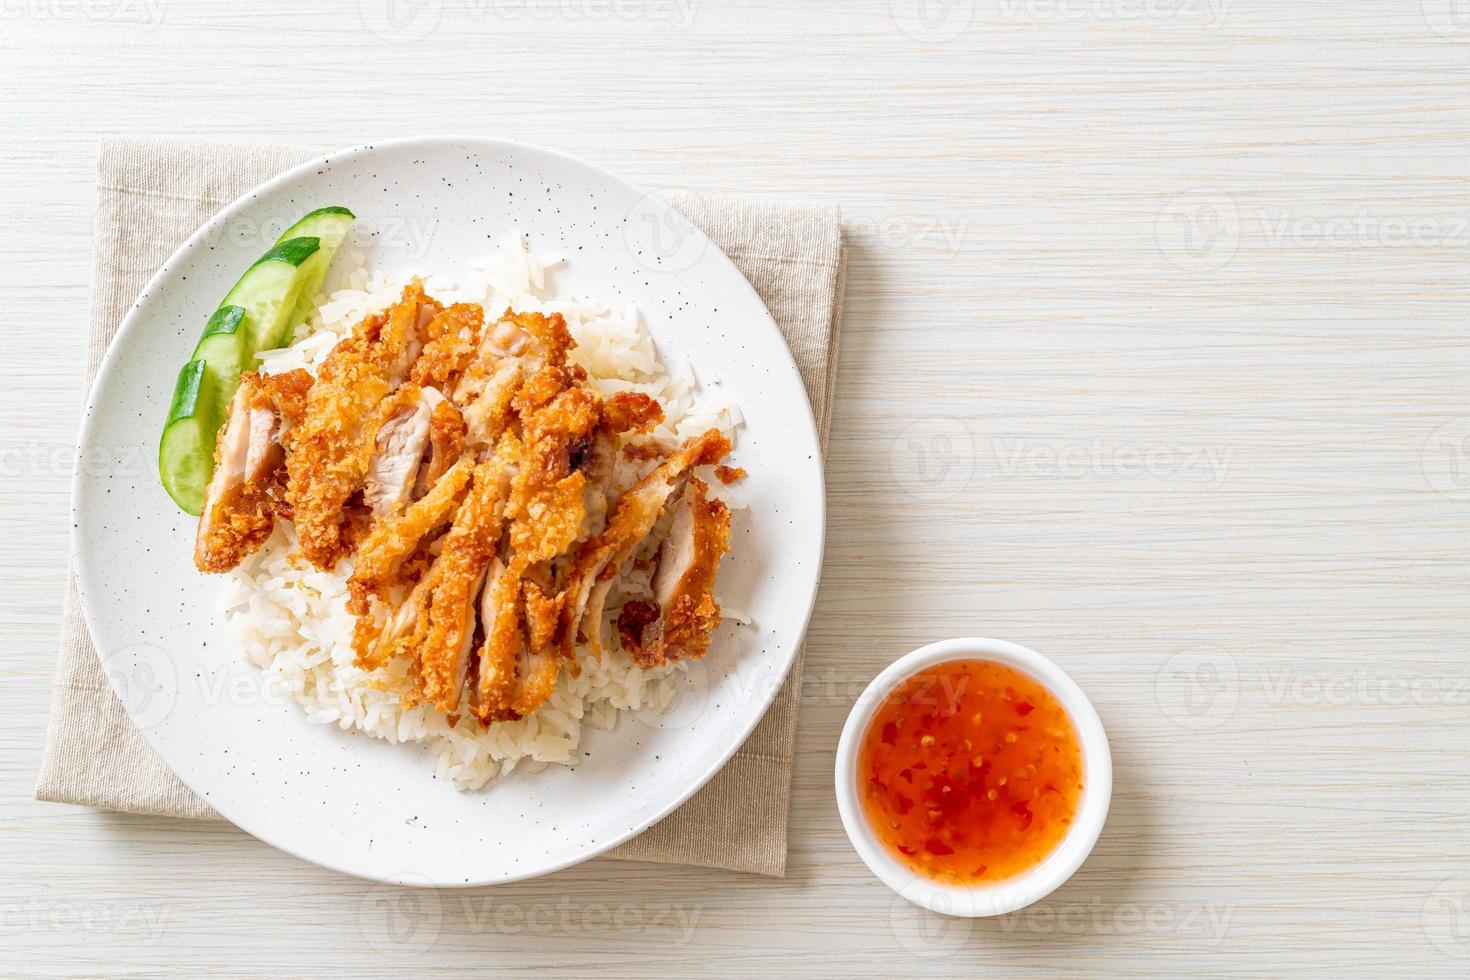 arroz de frango hainanese com frango frito foto